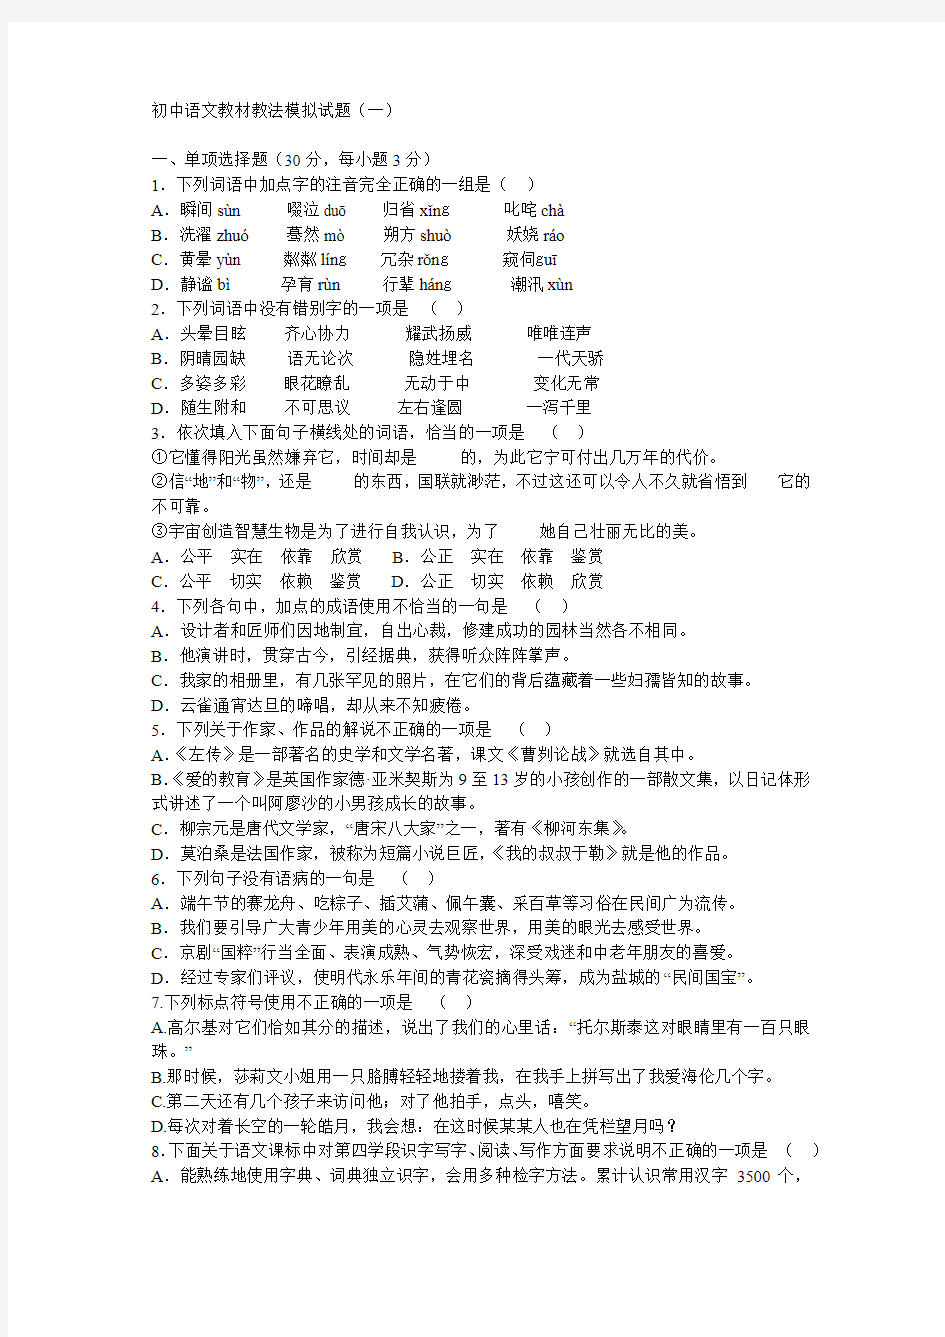 初中语文教材教法模拟试题及答案 (共三套)